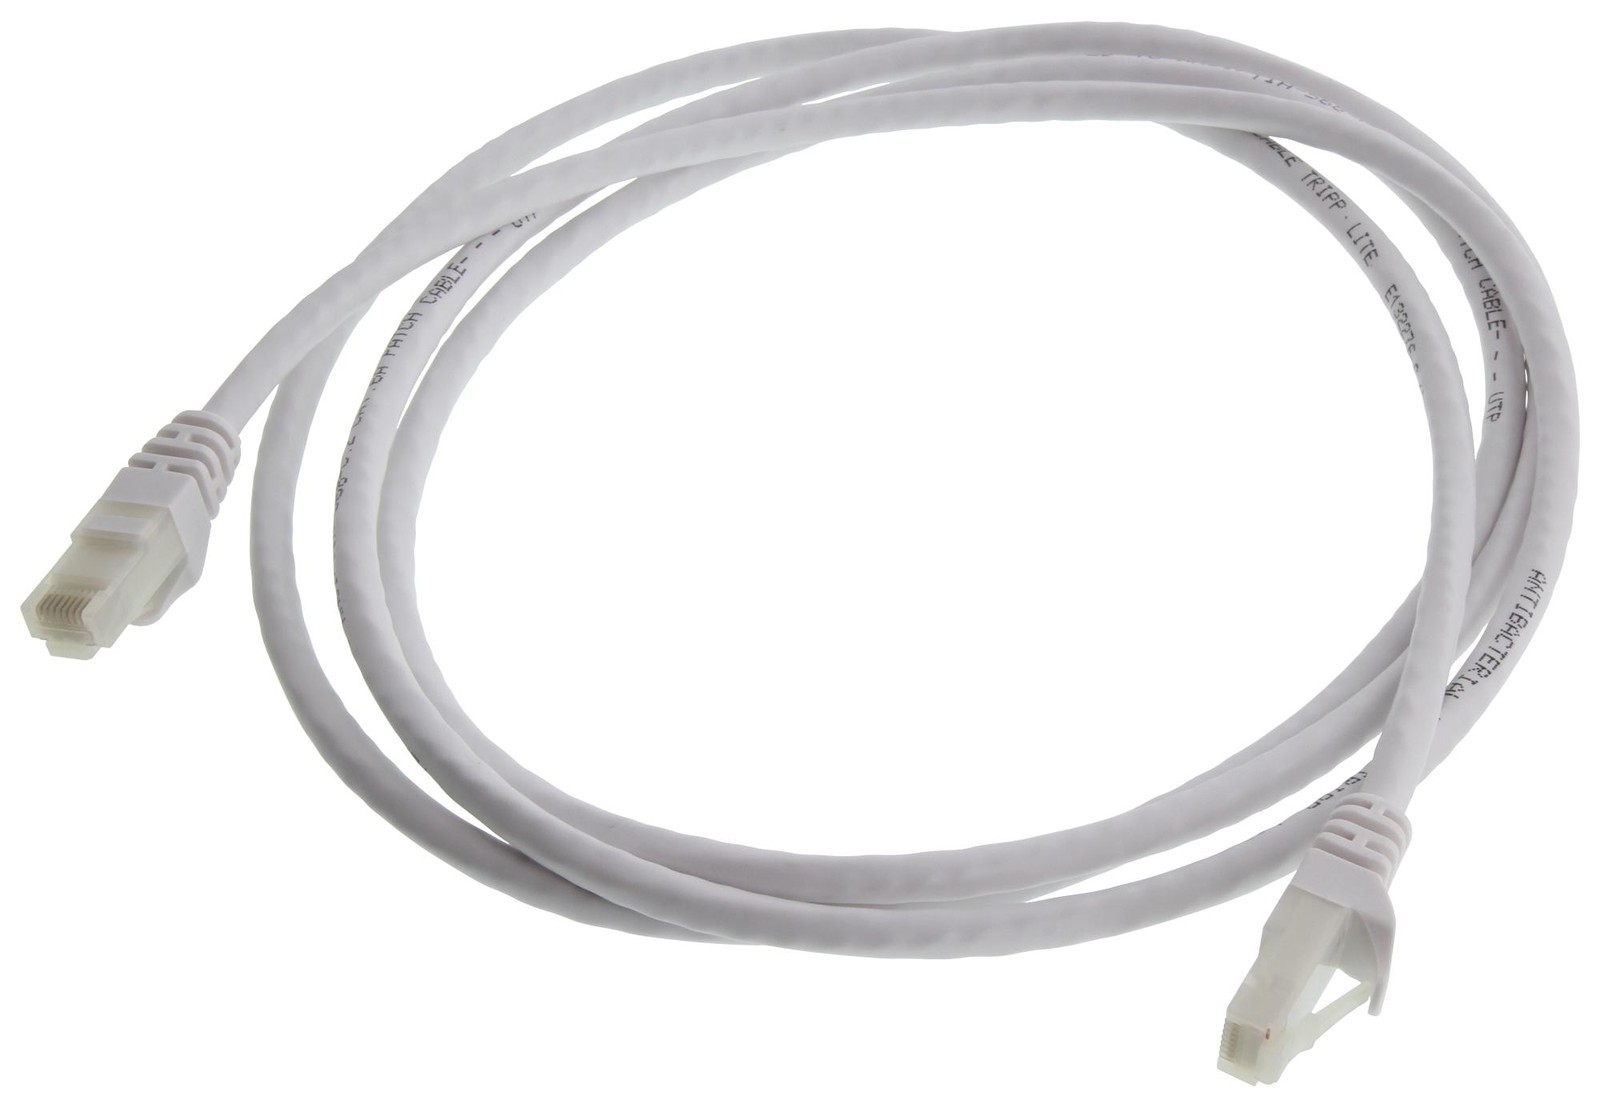 Eaton Tripp Lite N261Ab-007-Wh Enet Cable, Rj45 Plug-Plug, 7Ft, White